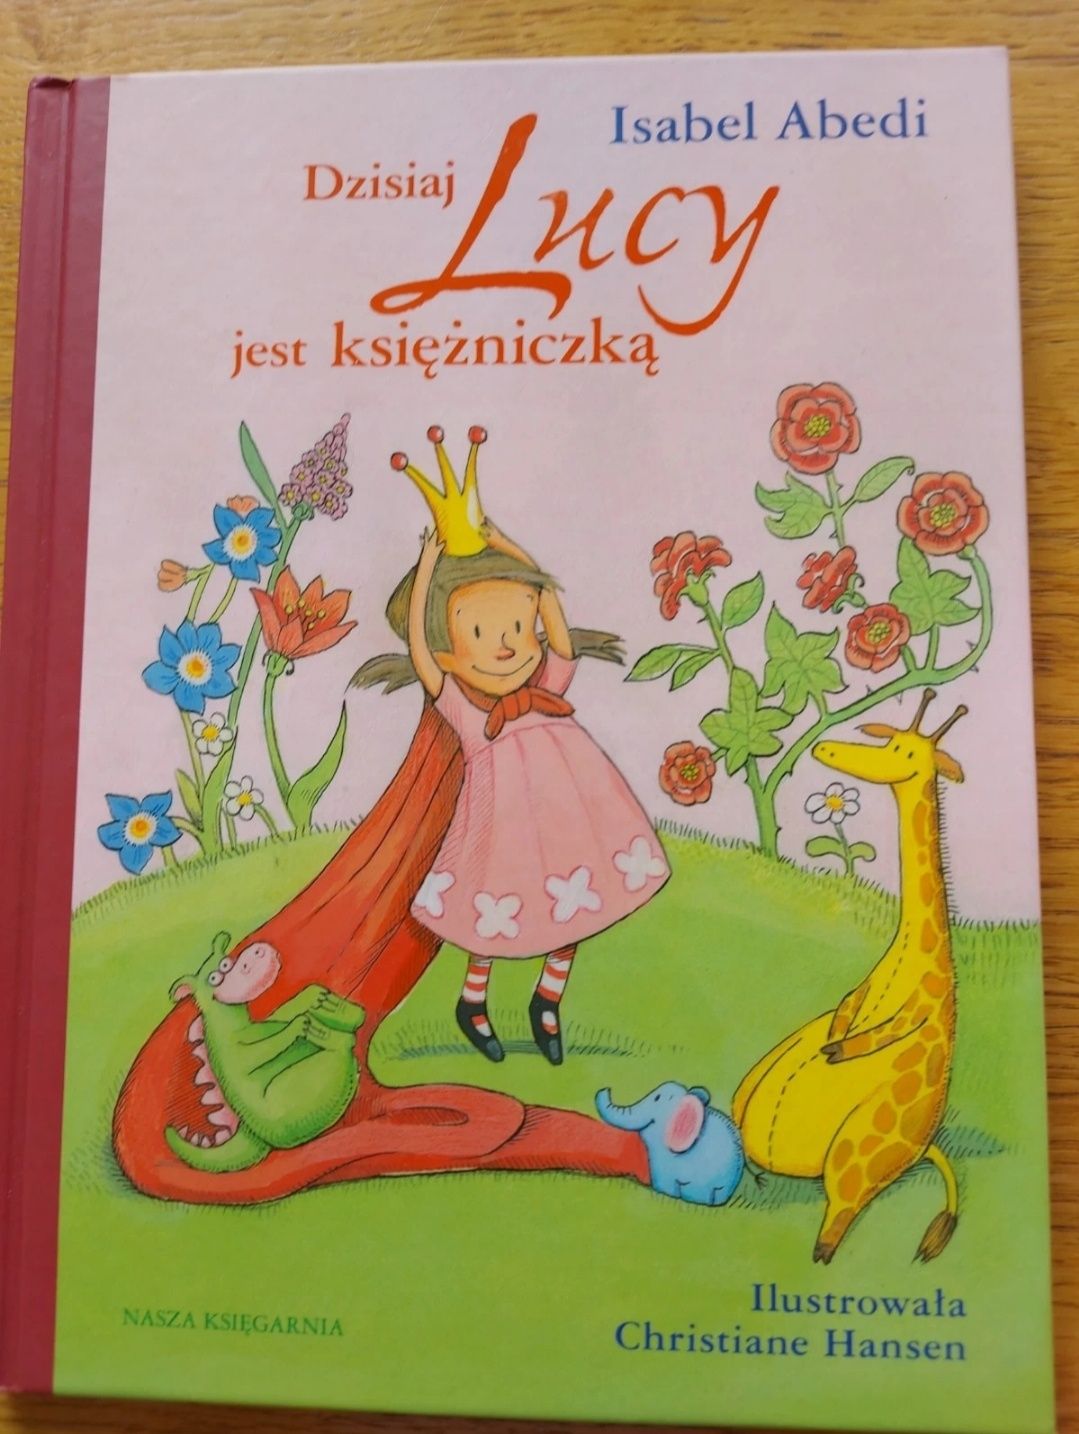 Książka "Dzisiaj Lucy jest księżniczką" I.Abedi - bajka z morałem